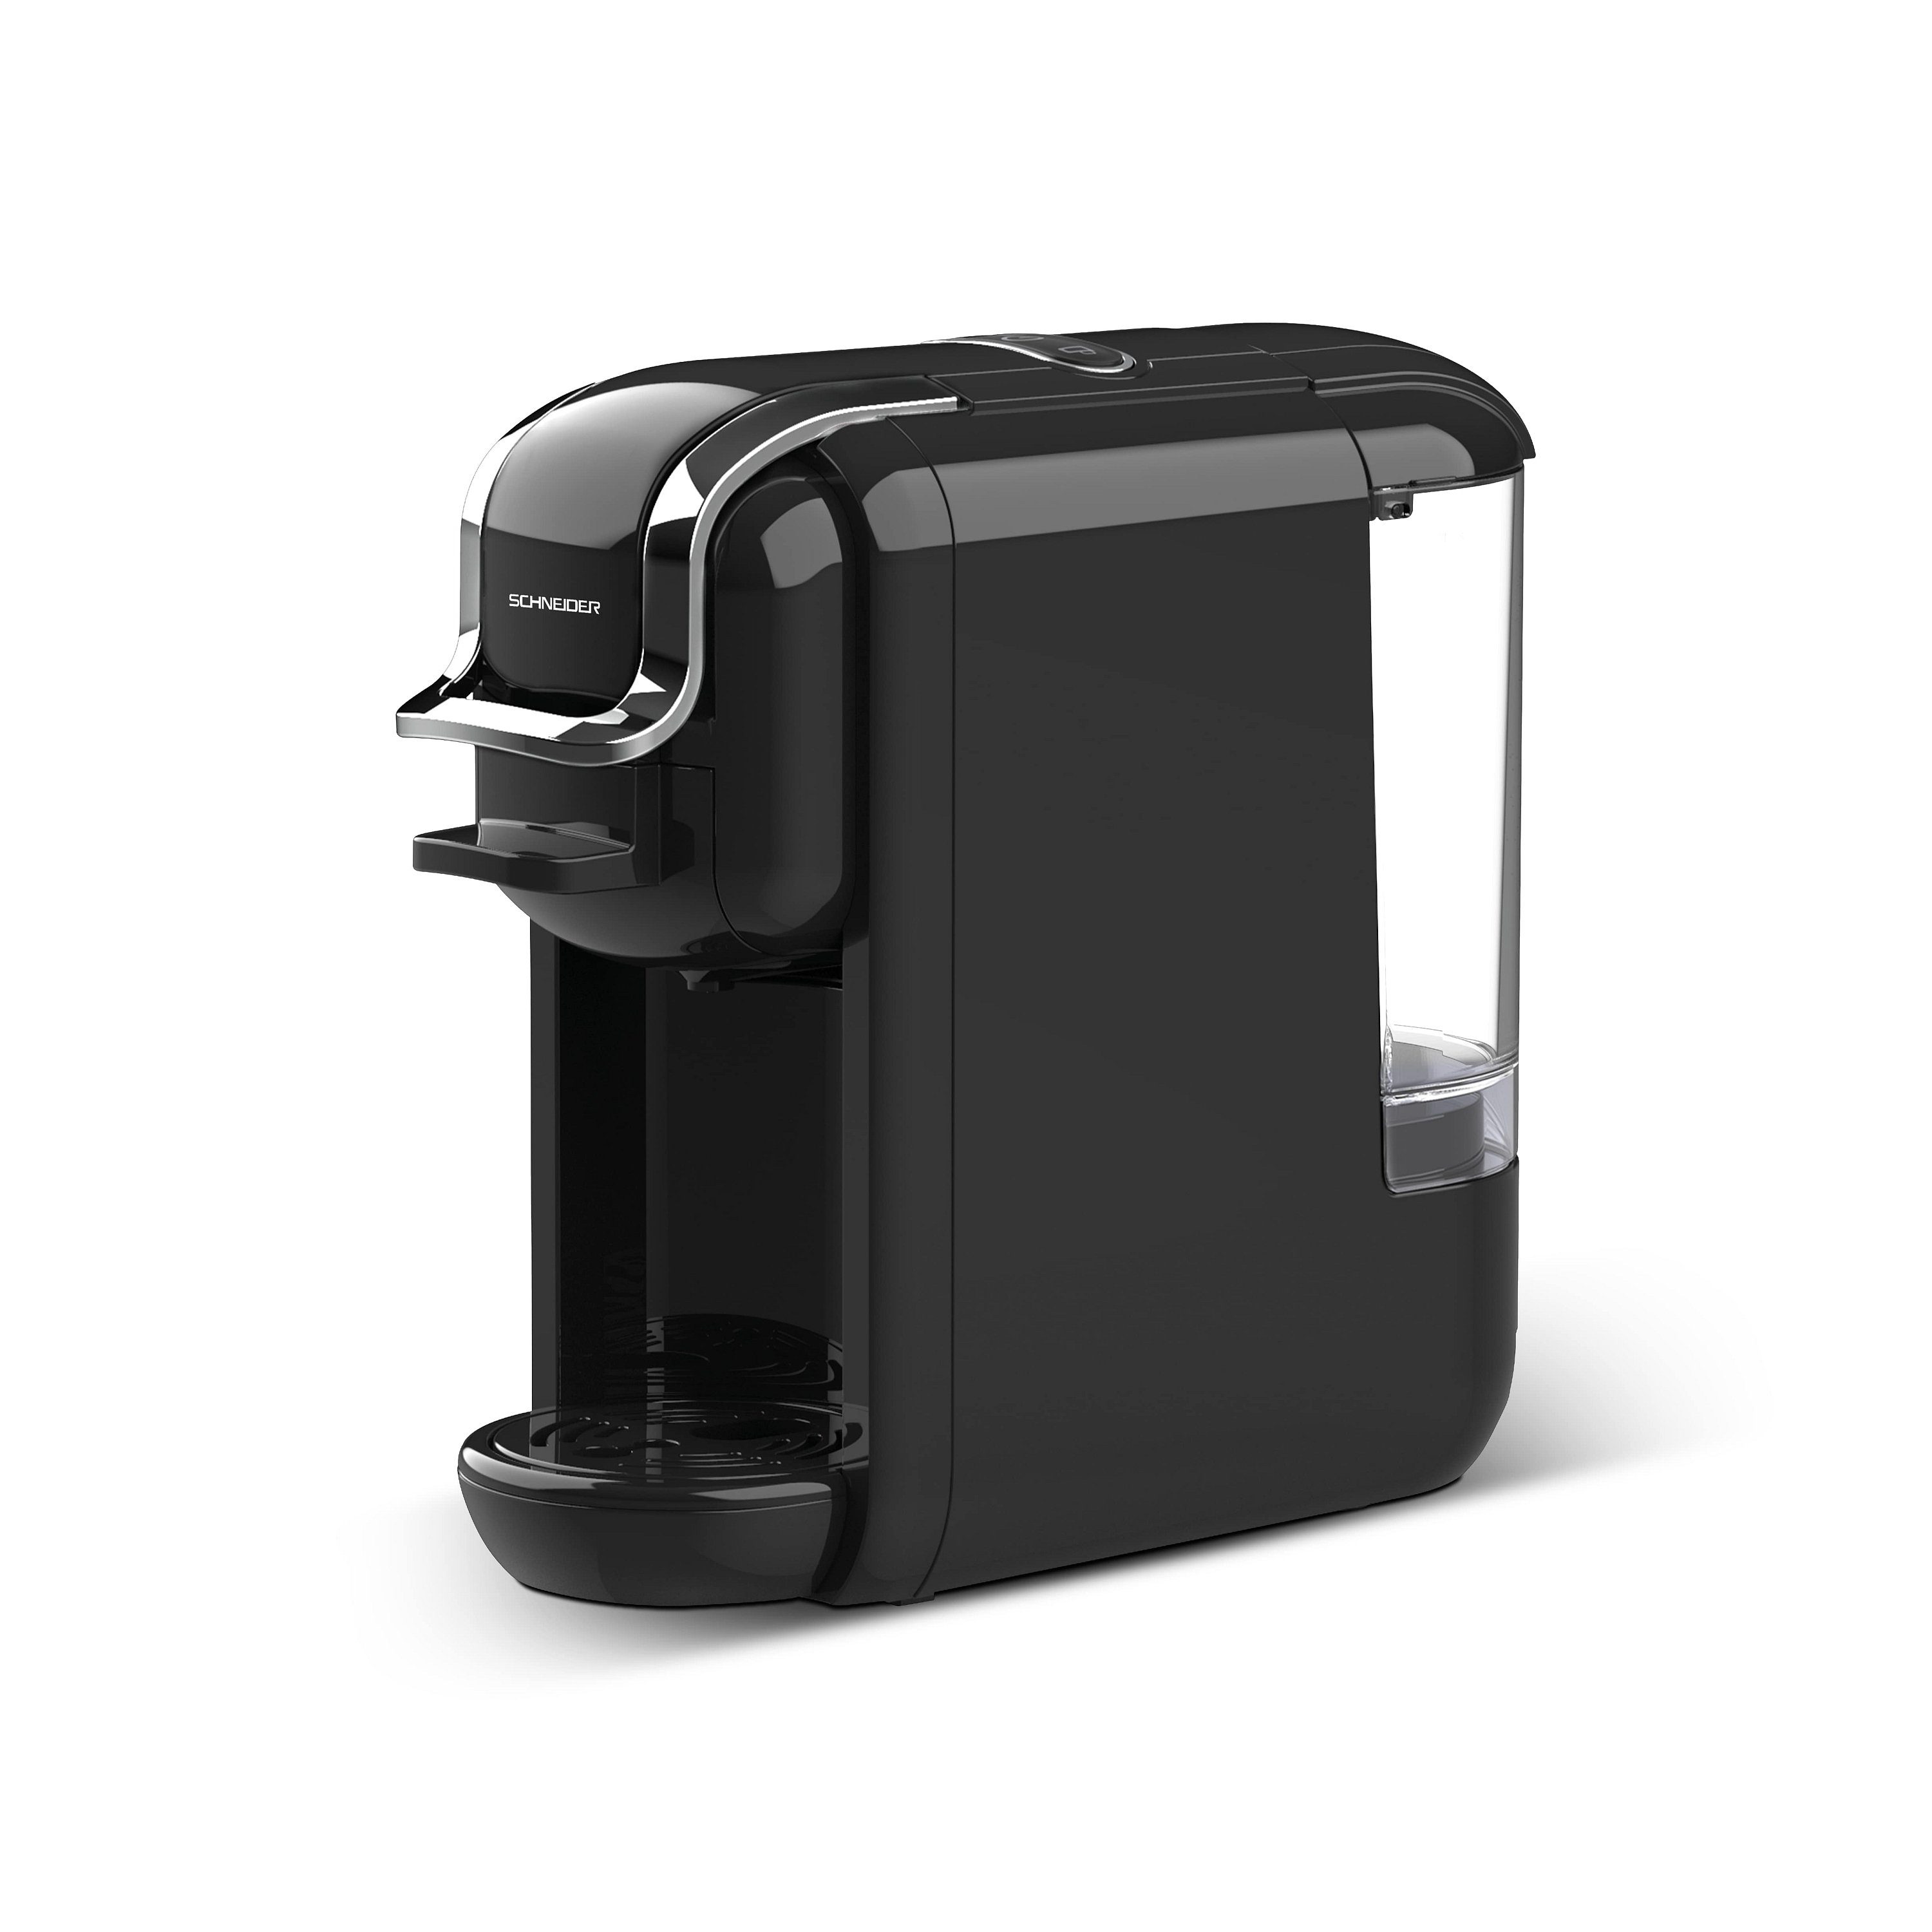 & Kaffee Bar Kaffeepadmaschine Dolce-Gusto schwarz SCHNEIDER Nespresso Druck, Pads gemahlenen 19 für Espresso,